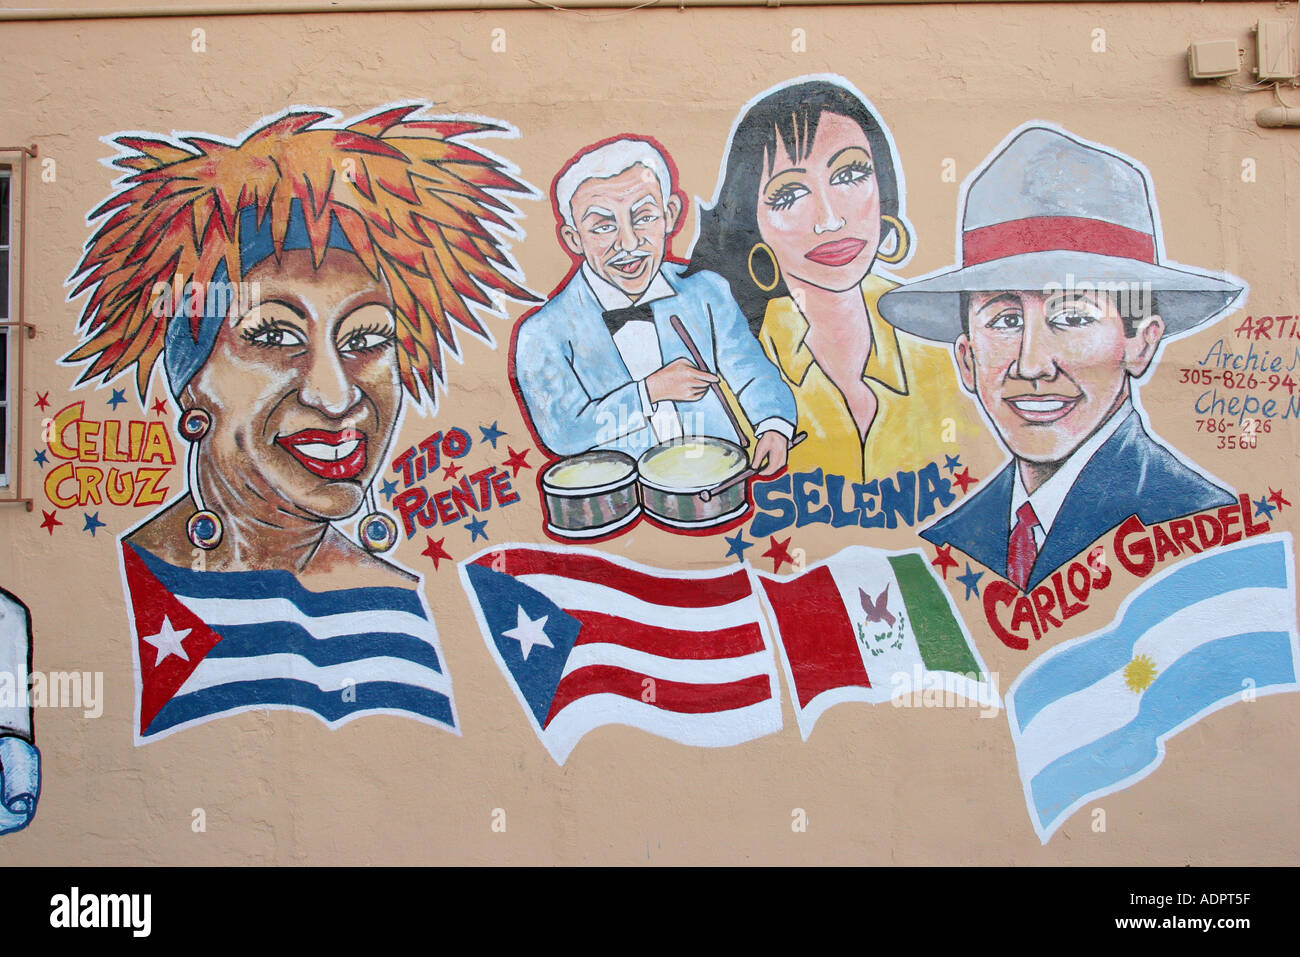 Miami Floride, Little Havana, Calle Ocho, murale, art public, icônes culturelles hispaniques, chanteur artiste, Celia Cruz Tito Puente Selena Carlos Gardel Banque D'Images